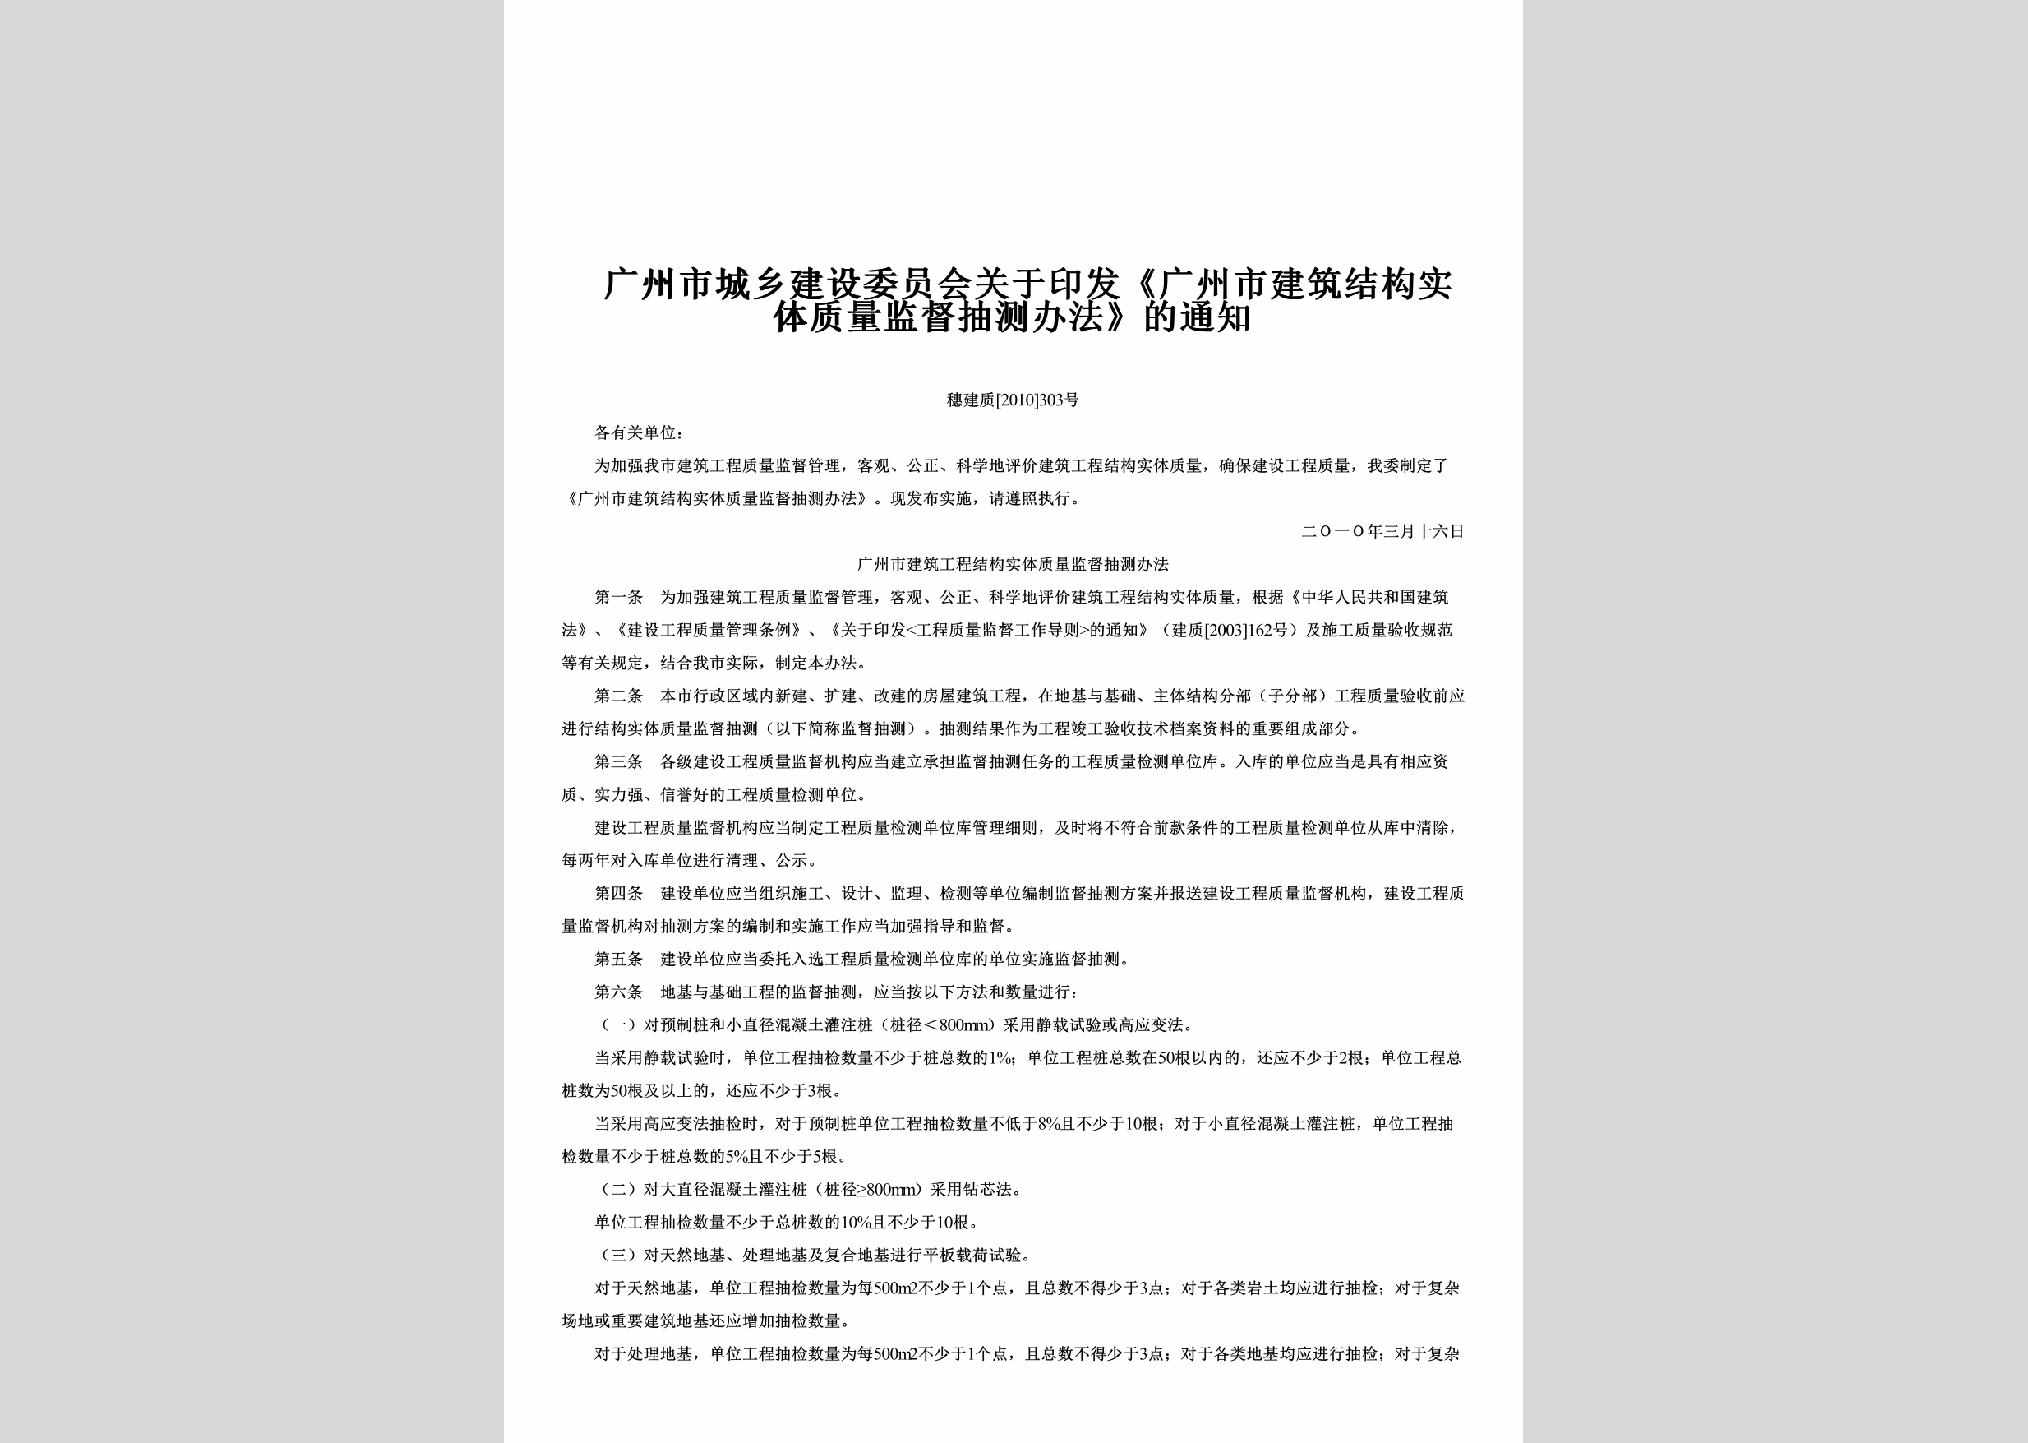 穗建质[2010]303号：关于印发《广州市建筑结构实体质量监督抽测办法》的通知